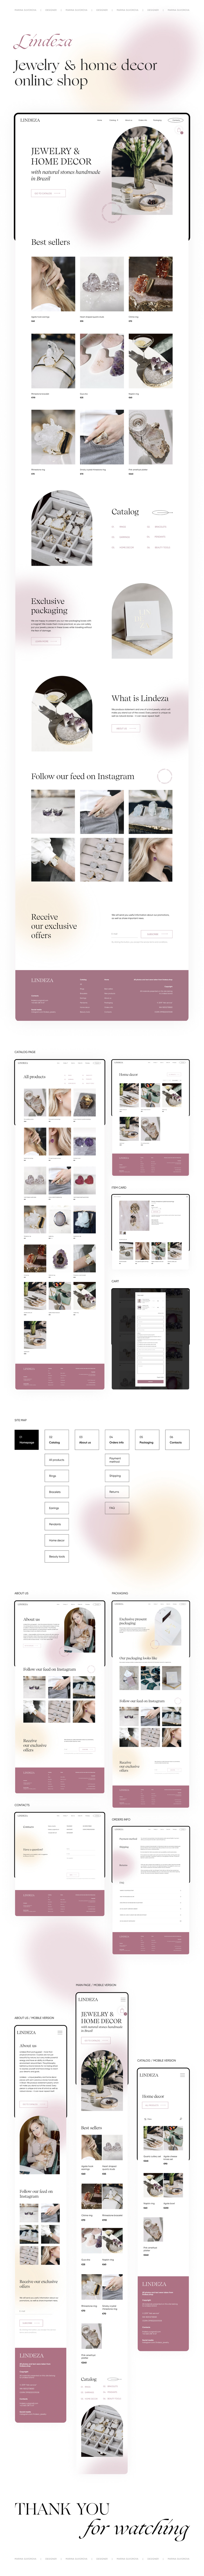 design jewelry online shop store tilda UI ux